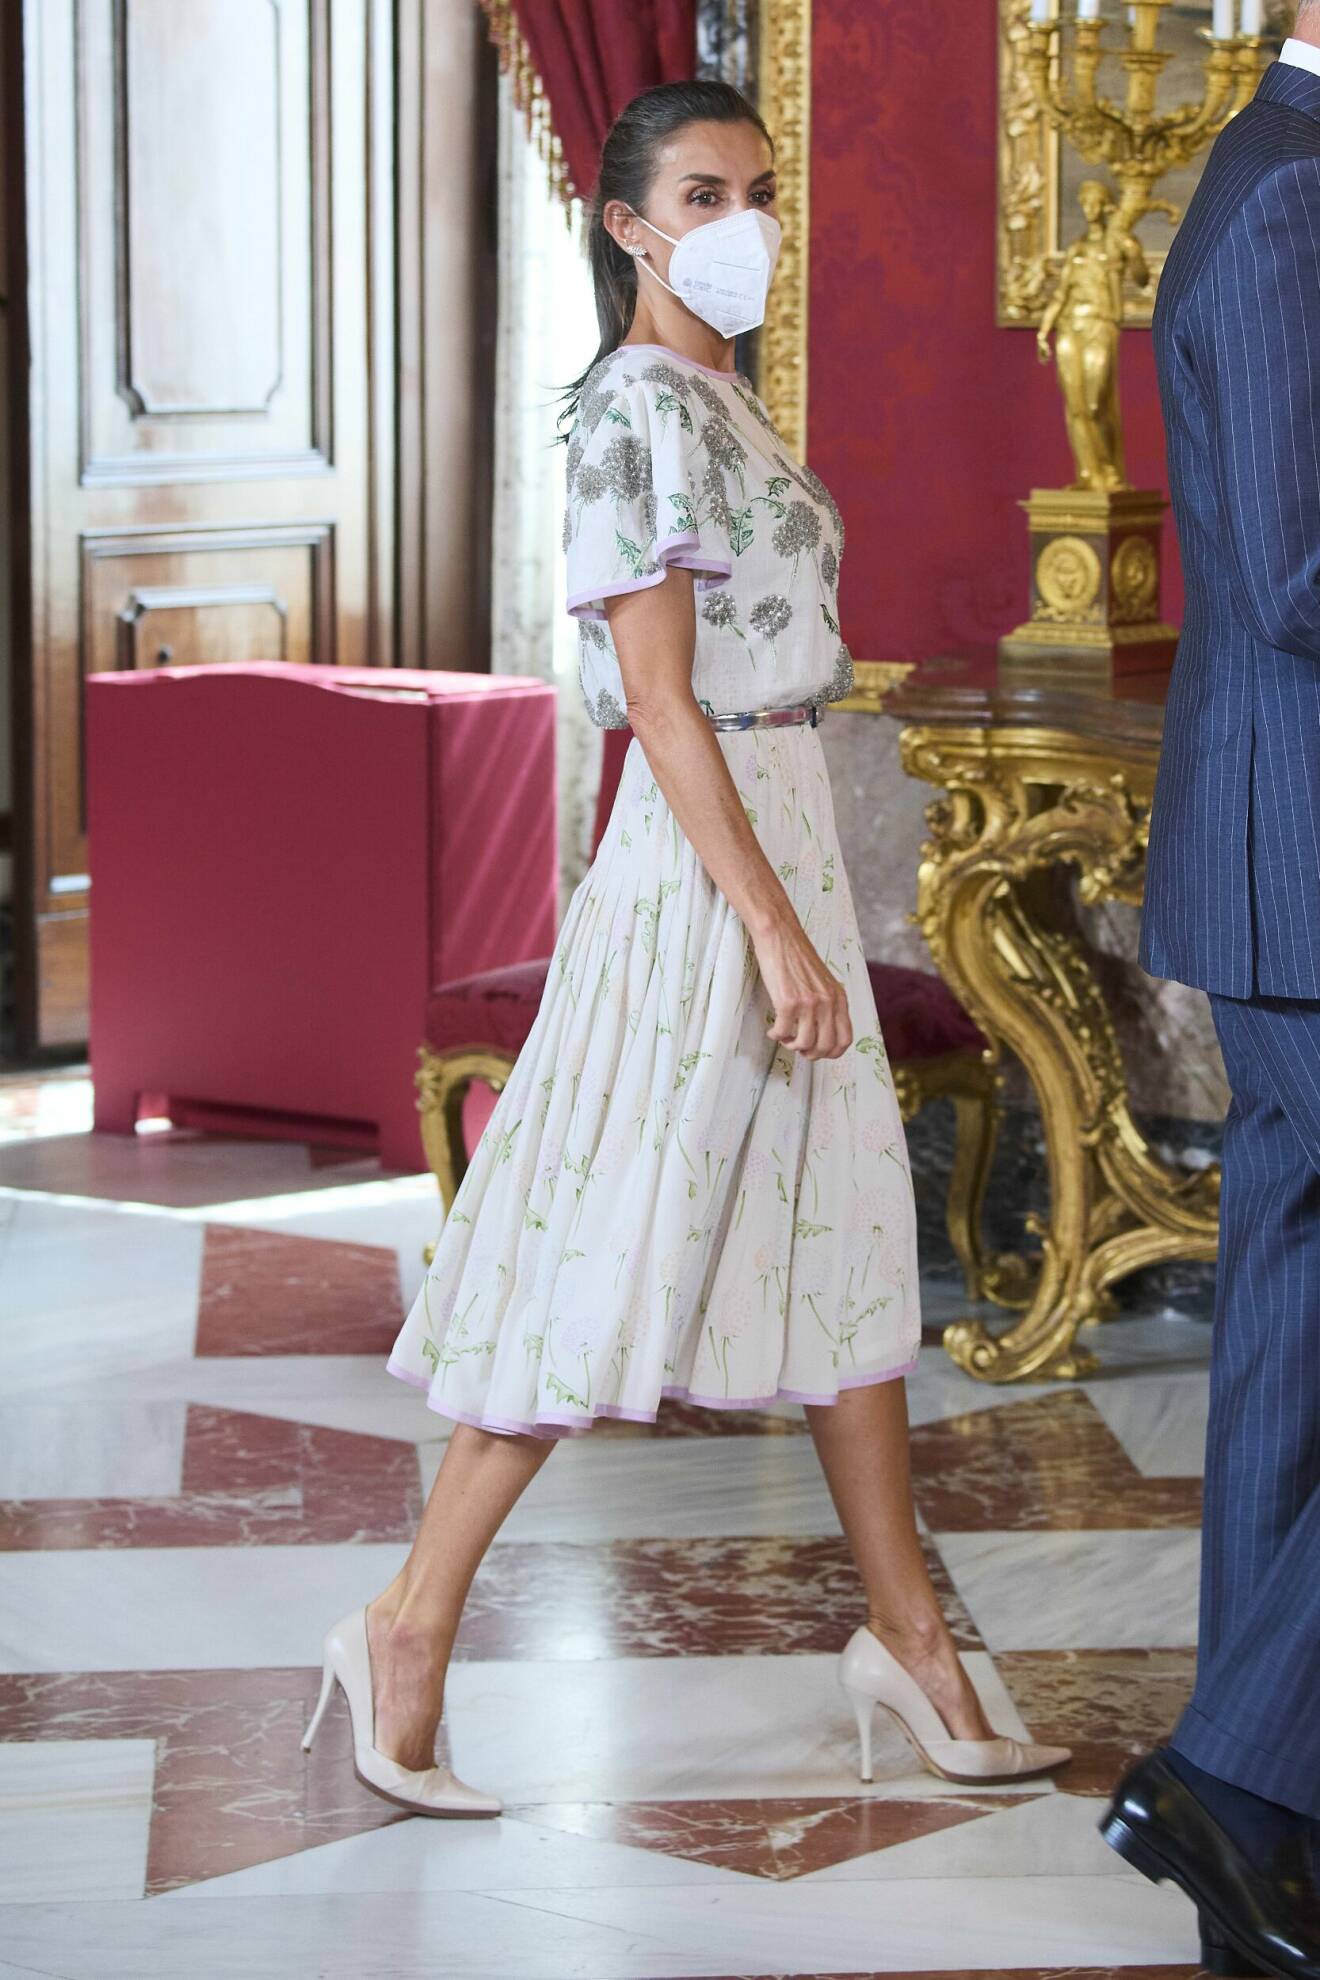 Drottning Letizia i blommönstrad klänning och silverskärp.